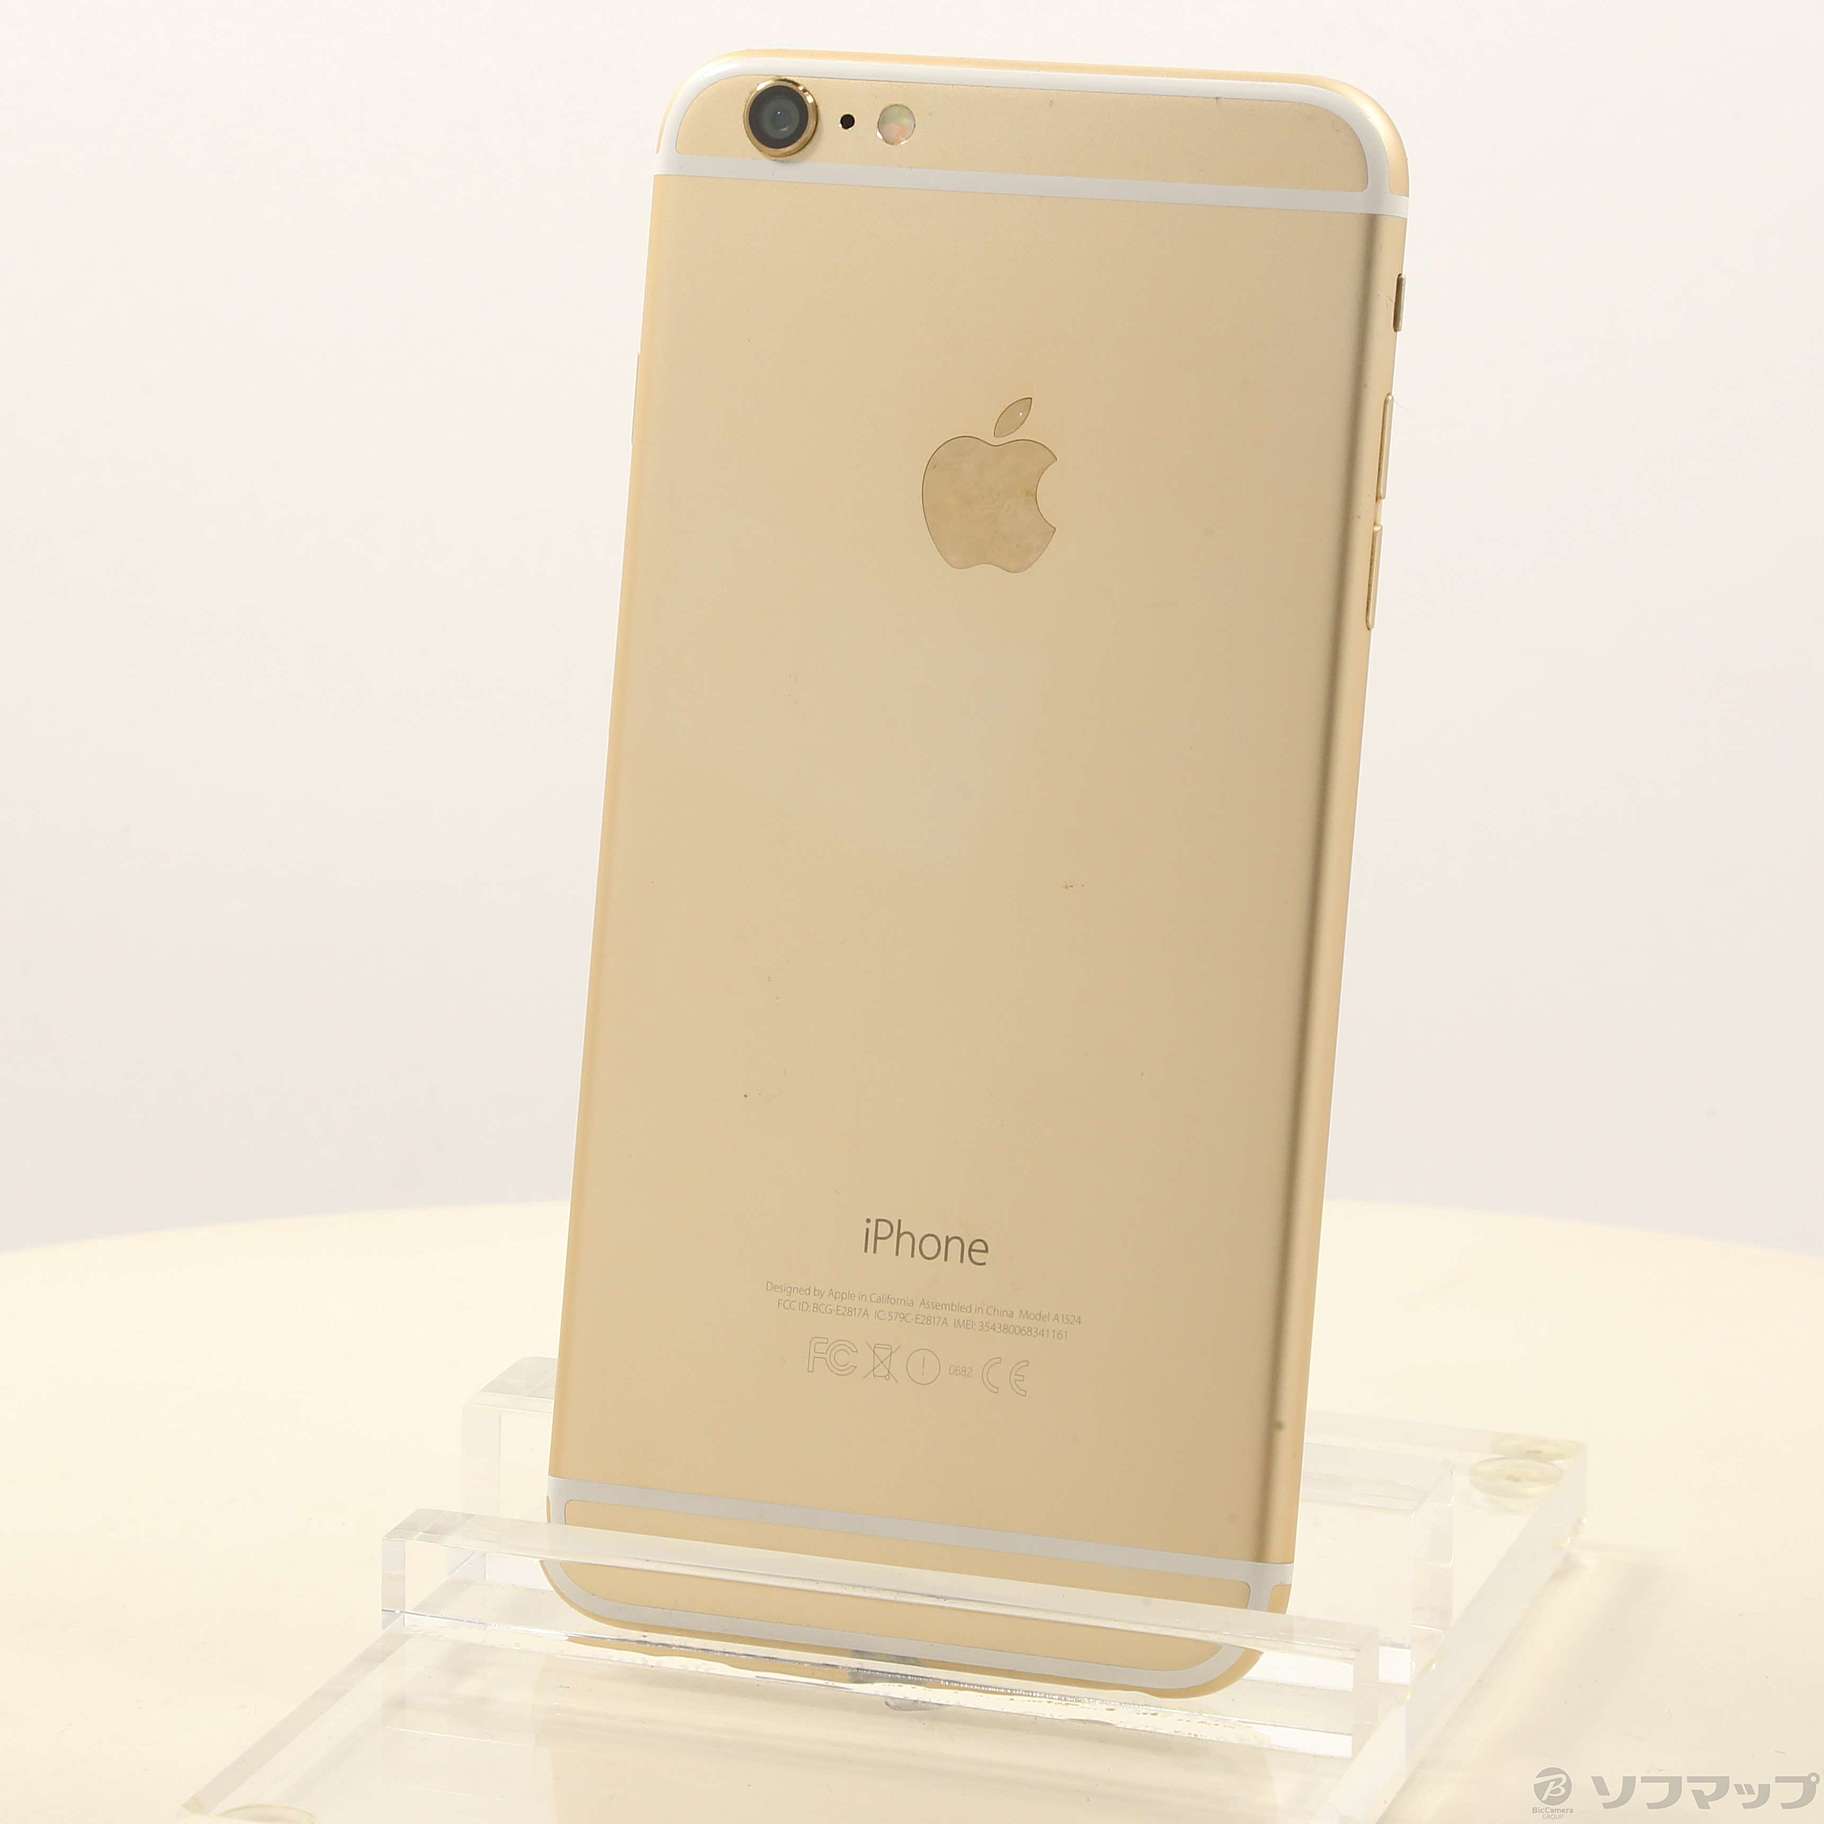 iPhone 6 Plus Gold 64 GB docomo - スマートフォン本体